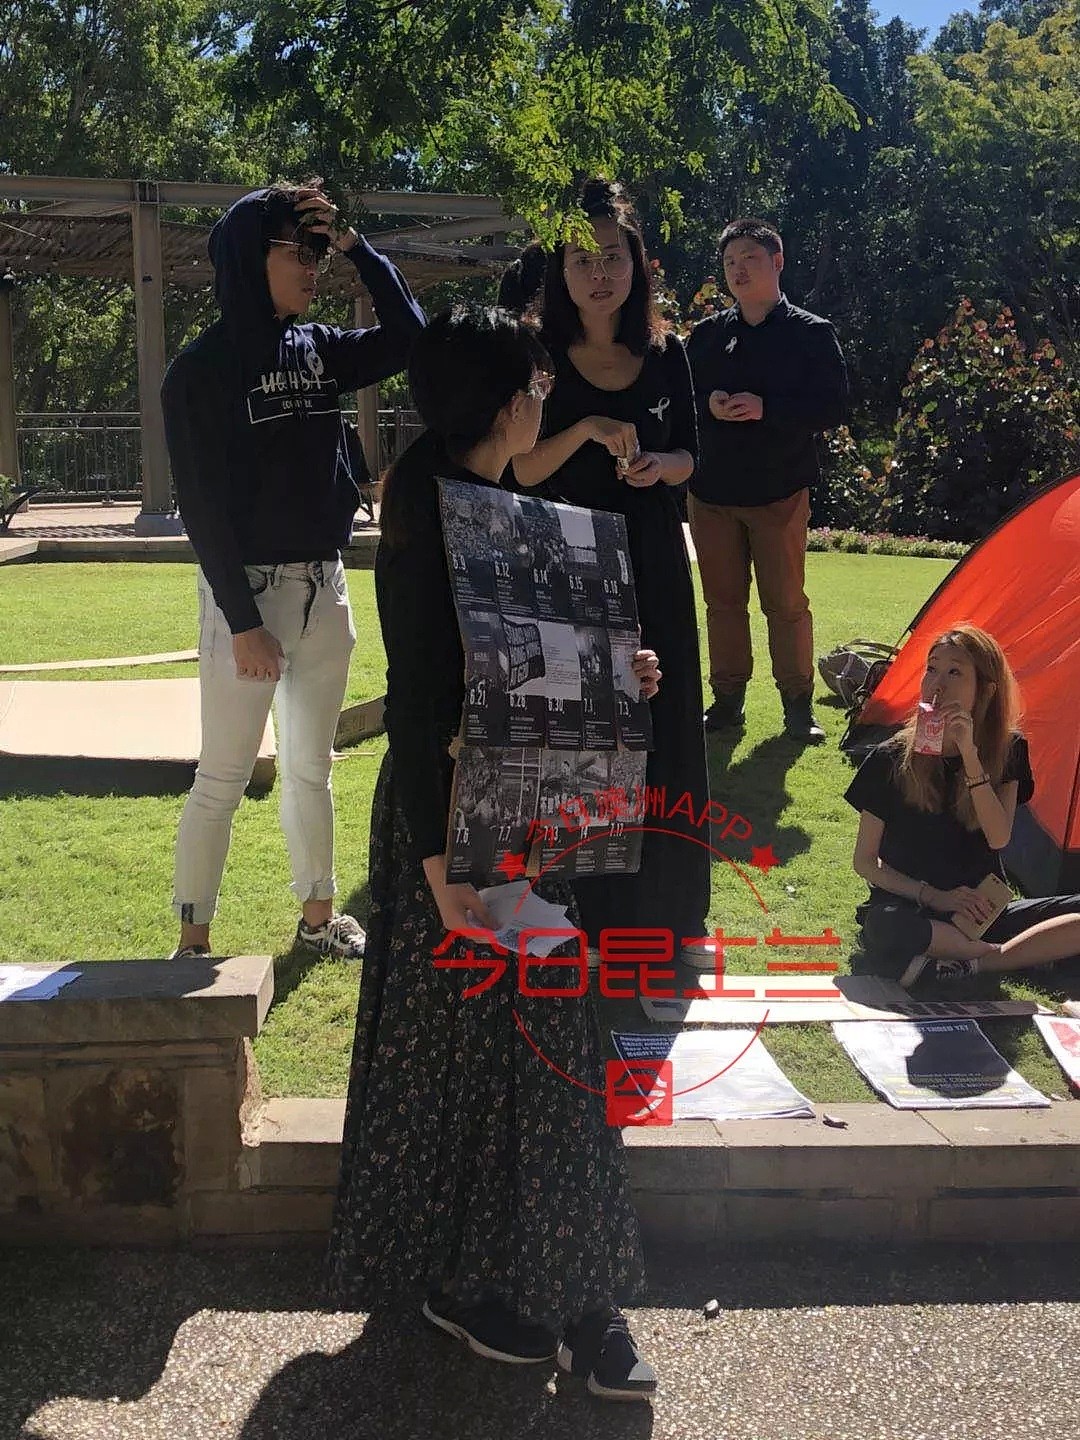 澳中国留学生现场高唱国歌声援“维护祖国统一！”不明身份人士澳名校活动现场发起集会，导致对立情绪升级 - 11